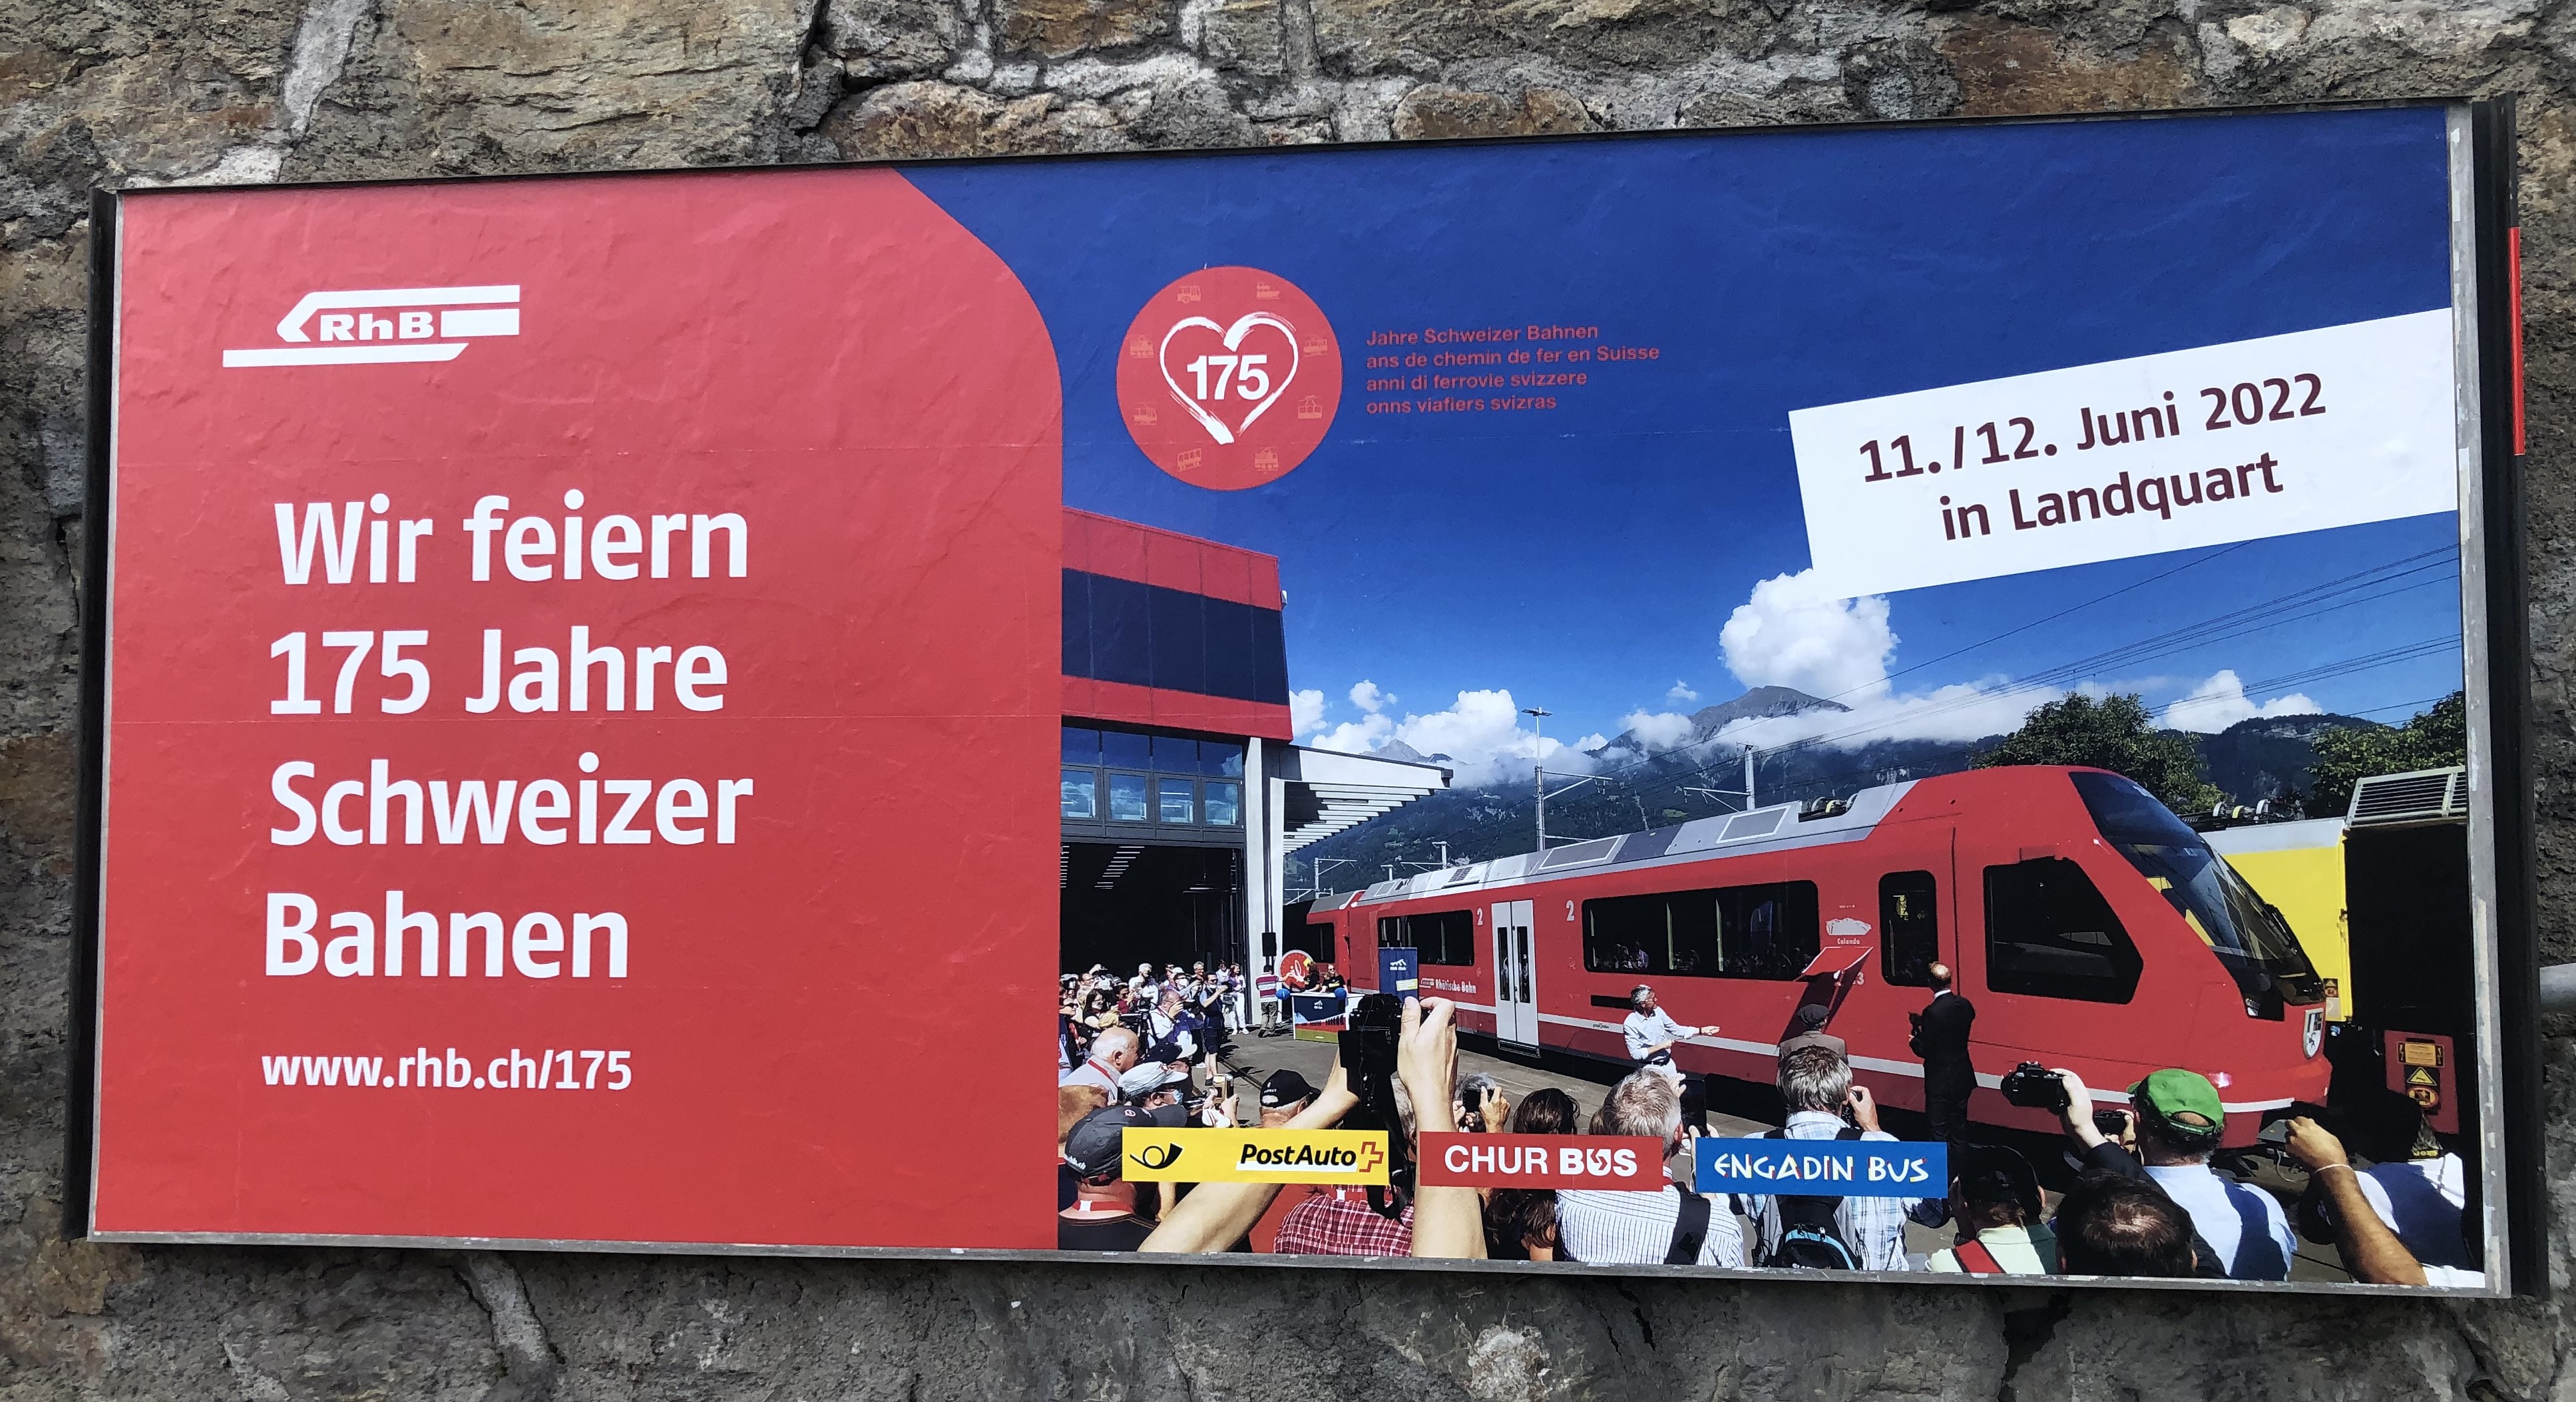 Feier zu 175 Jahre Schweizer Bahnen mit der RhB